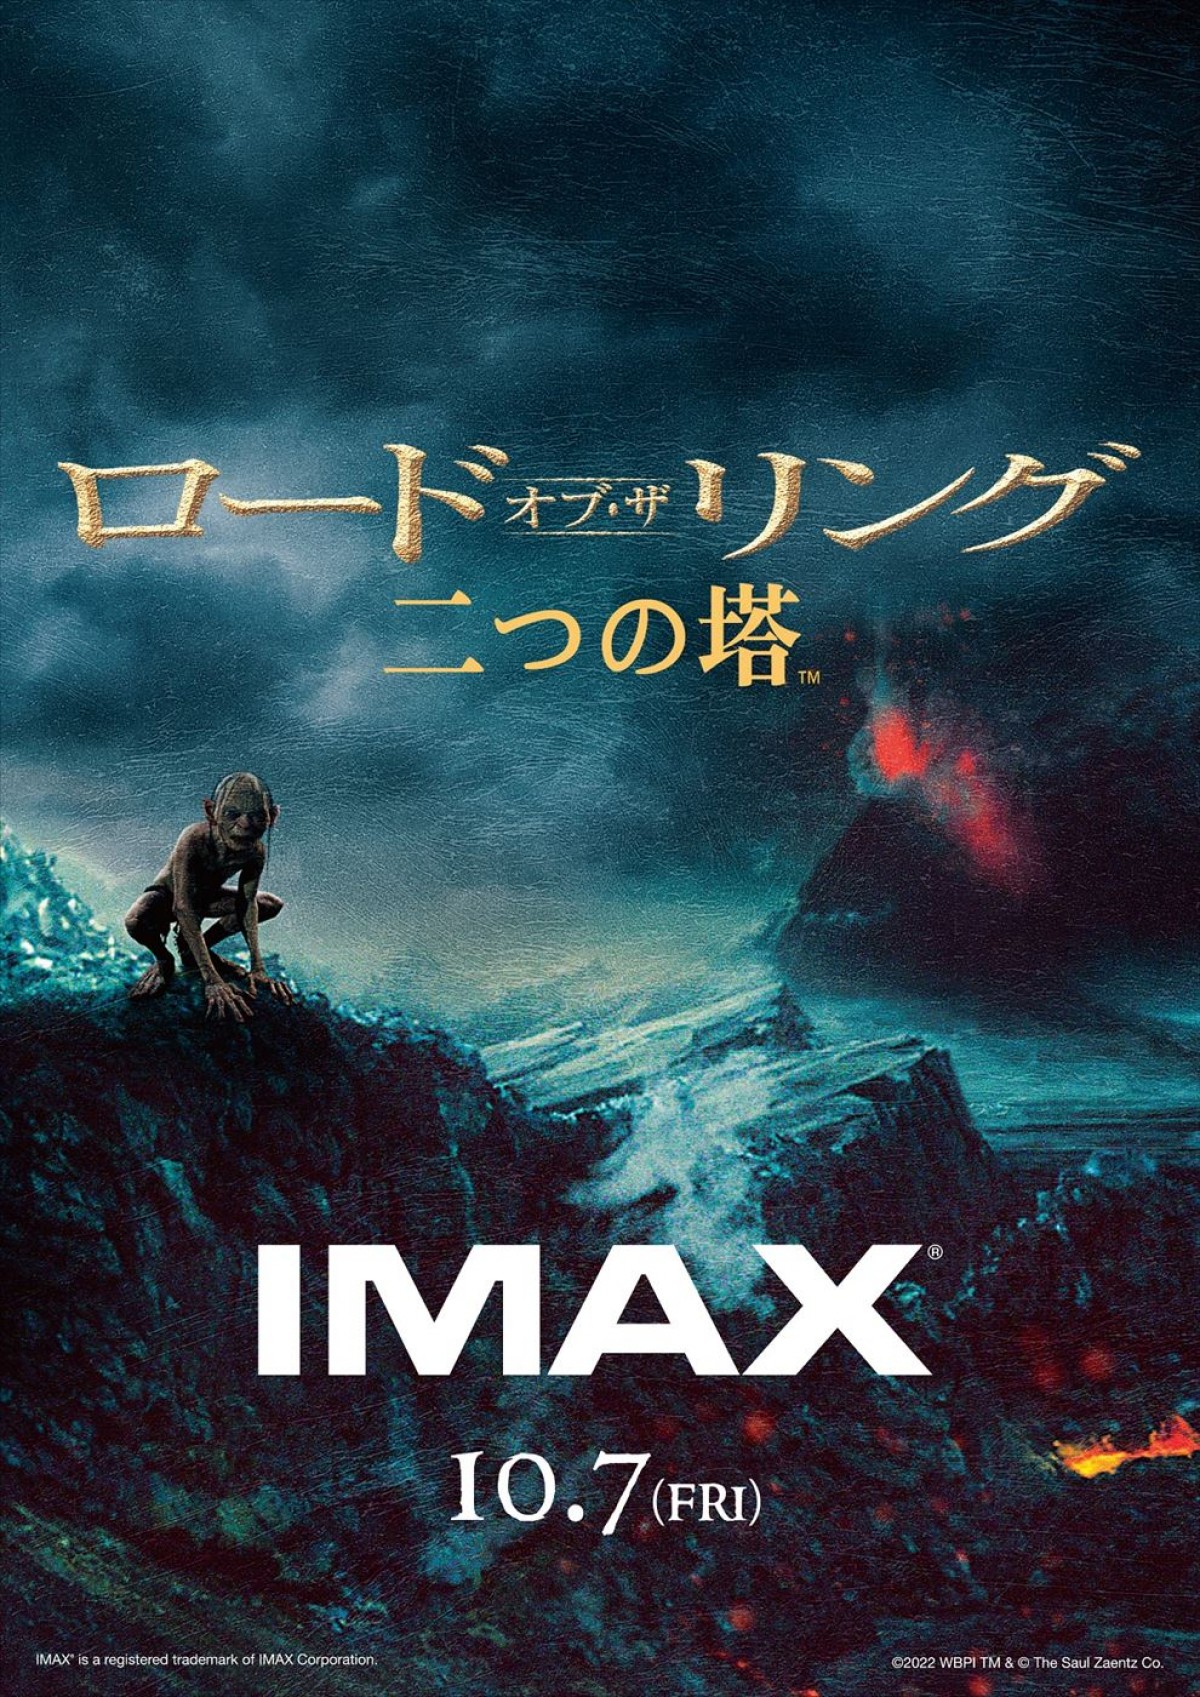 映画『ロード・オブ・ザ・リング』3部作、日本公開20周年記念で初のIMAX日本語字幕上映へ